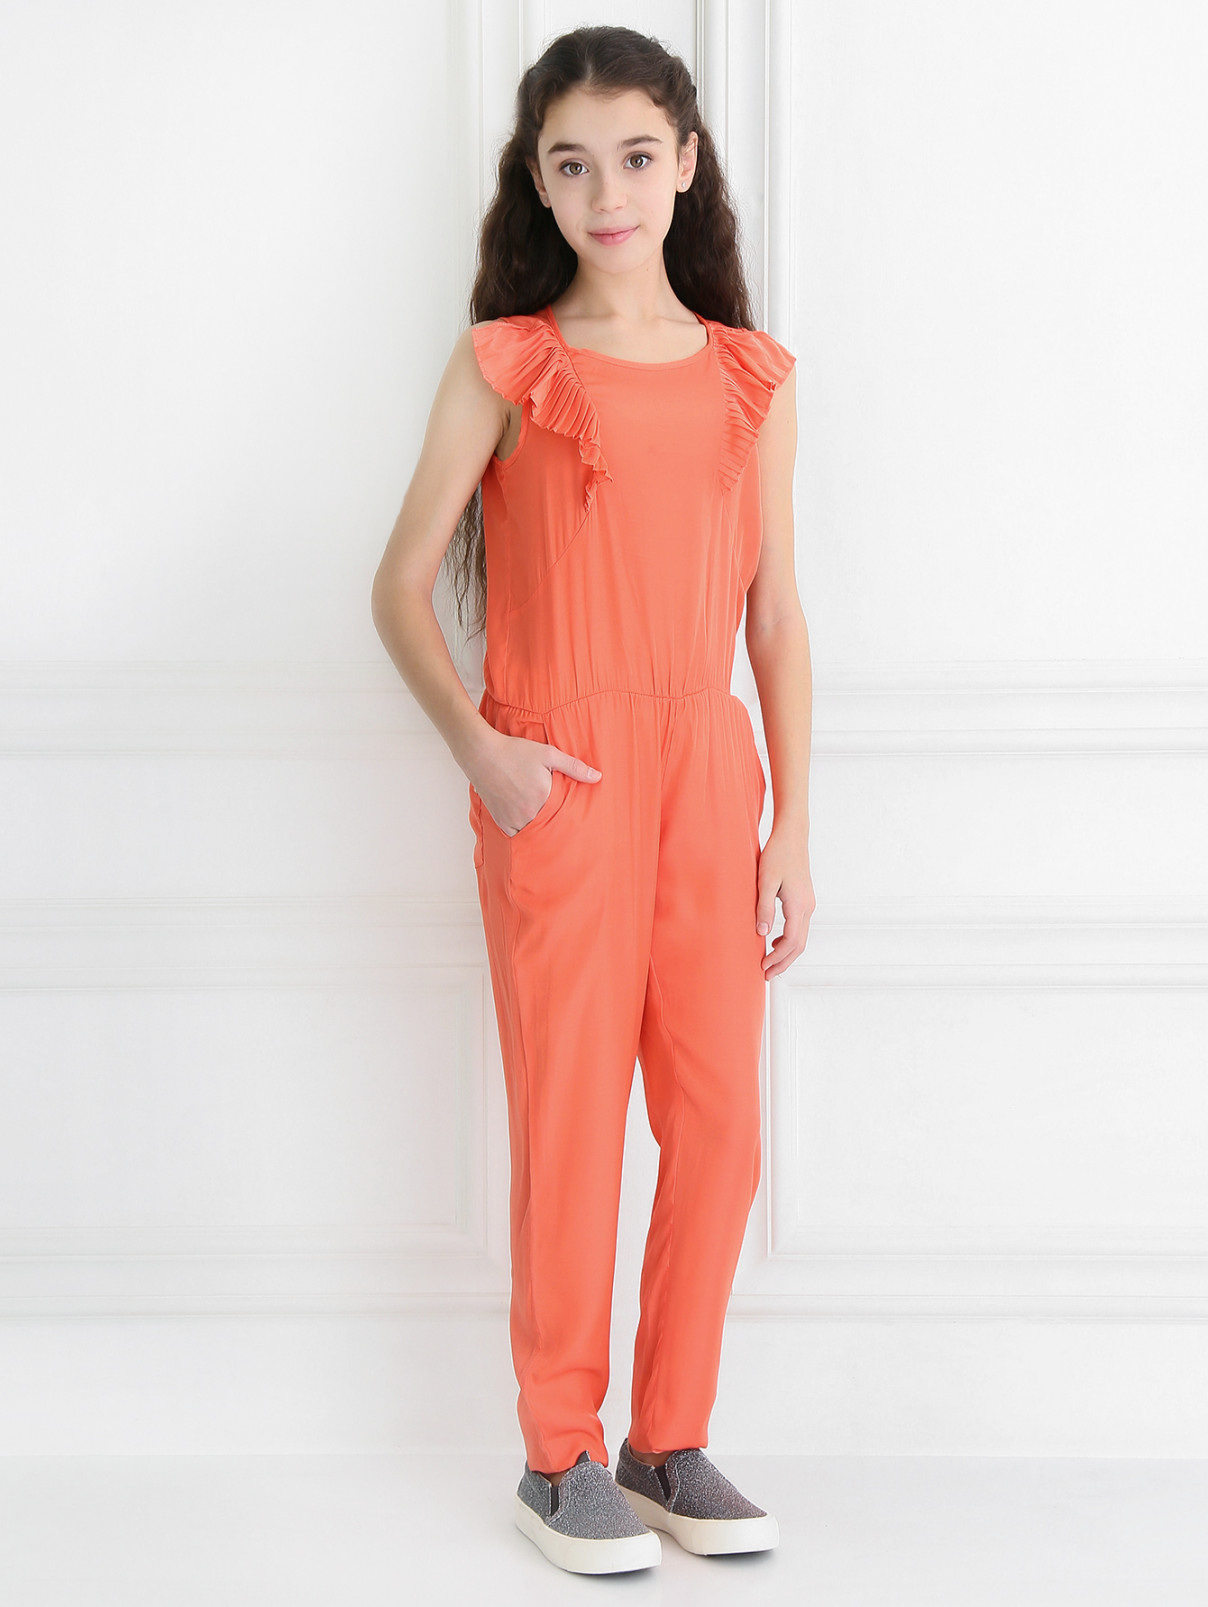 Комбинезон с карманами декорированный рюшами Pinko Up  –  Модель Общий вид  – Цвет:  Оранжевый